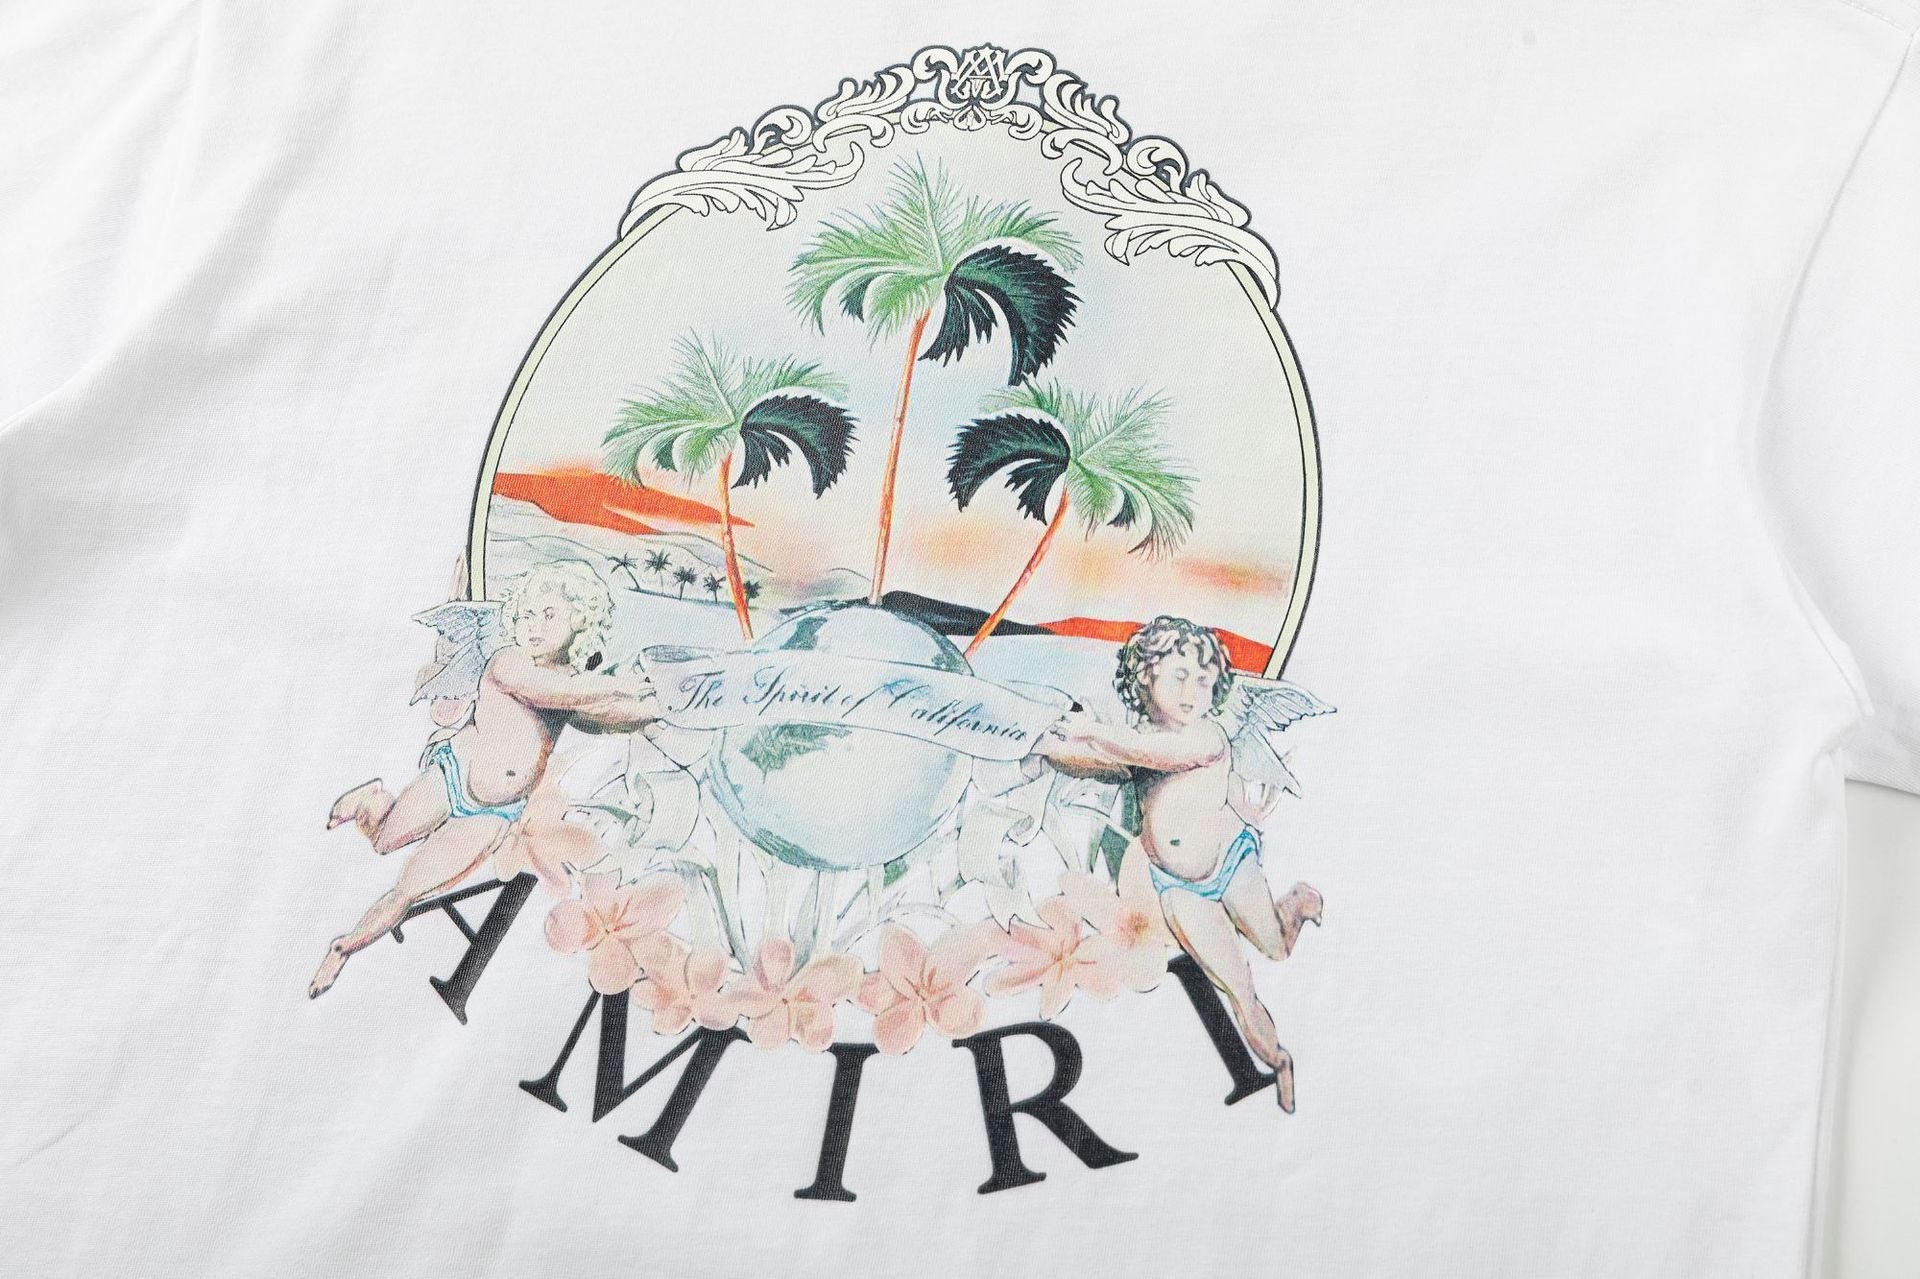 Amiri T-Shirt